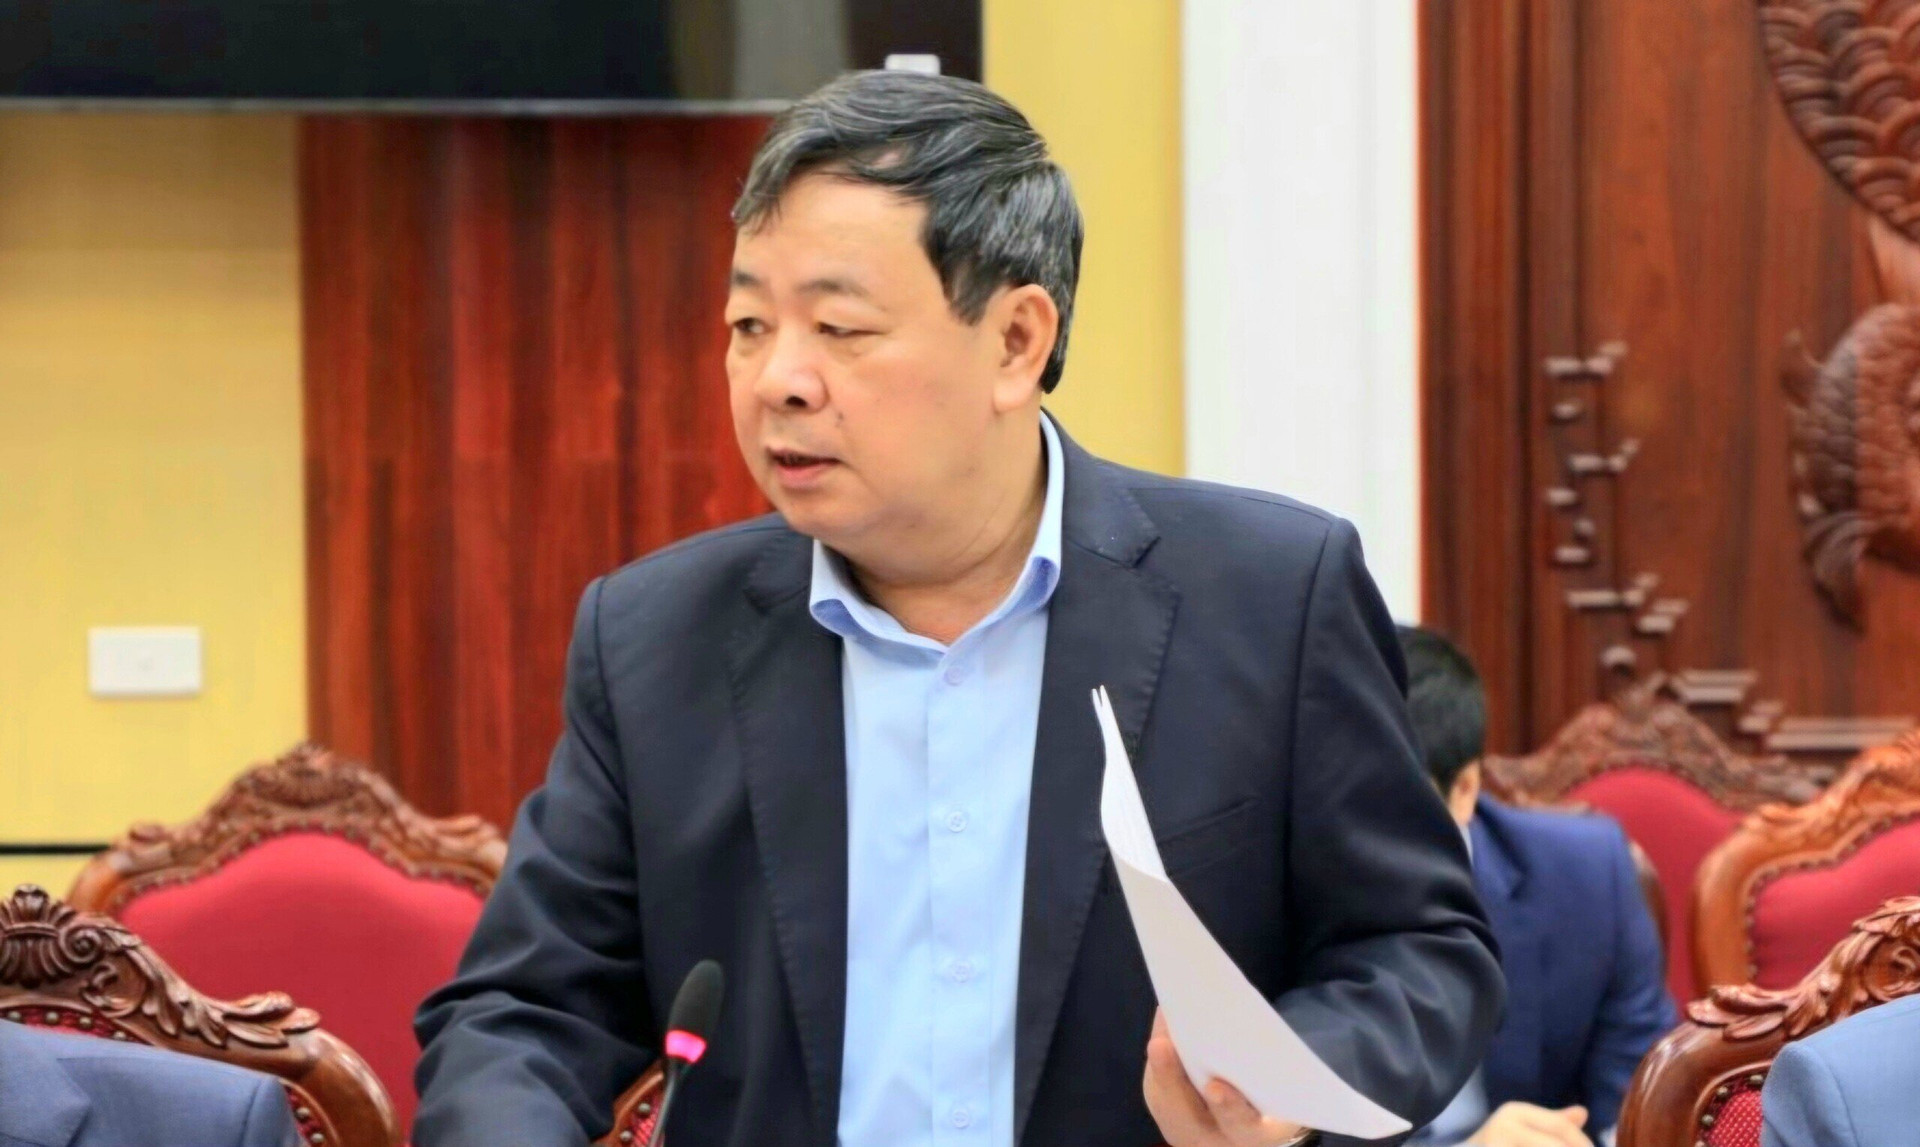 Ông Nguyễn Kim Thoại, Giám đốc Sở Tài chính tỉnh Bắc Ninh bị khởi tố về tội “Lợi dụng chức vụ, quyền hạn trong khi thi hành công vụ”.